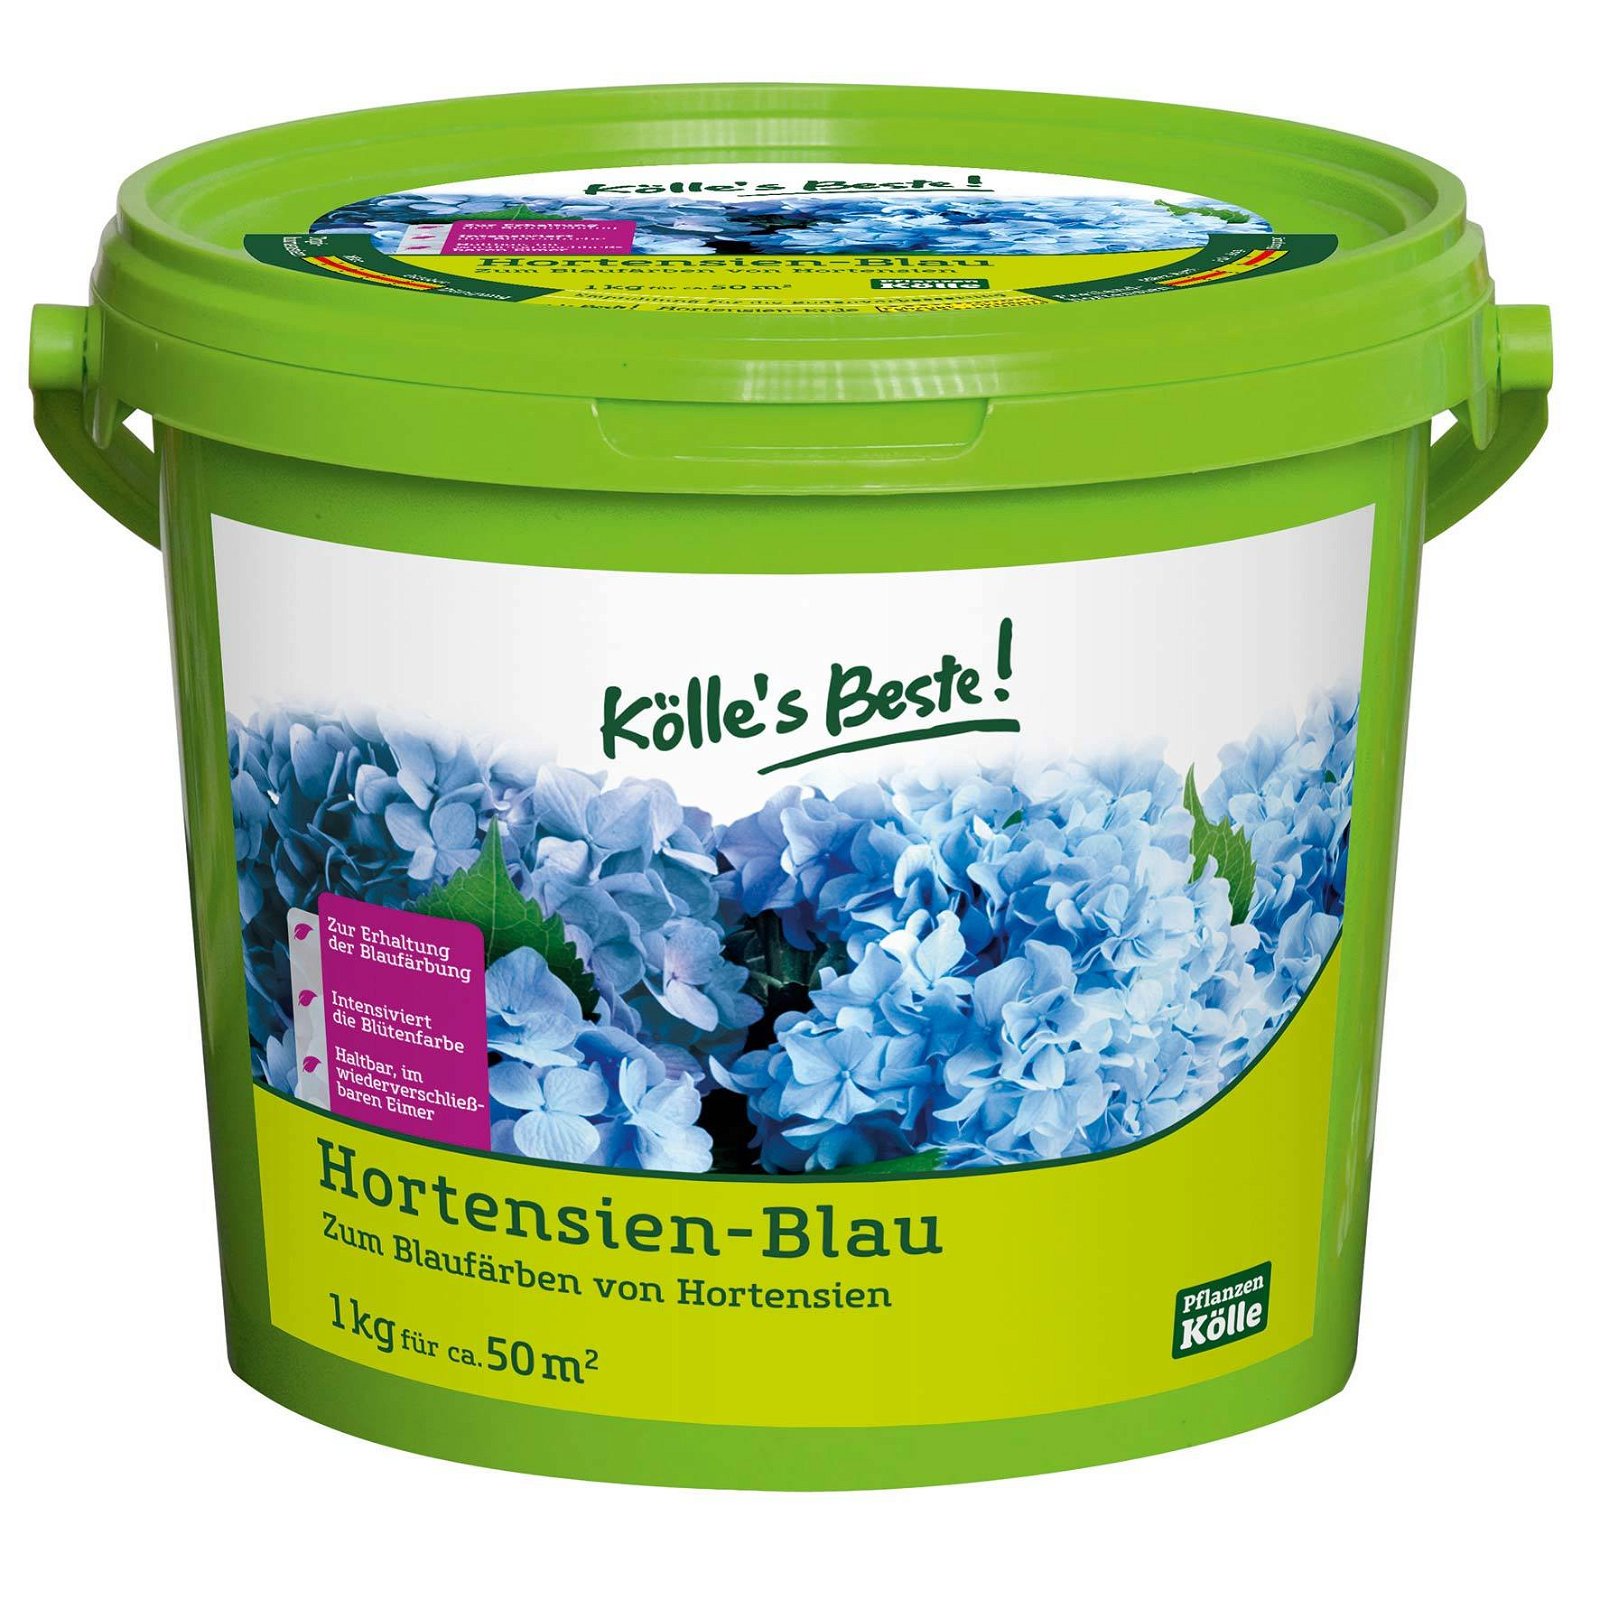 Kölle's Beste Hortensien-Blau 1 kg